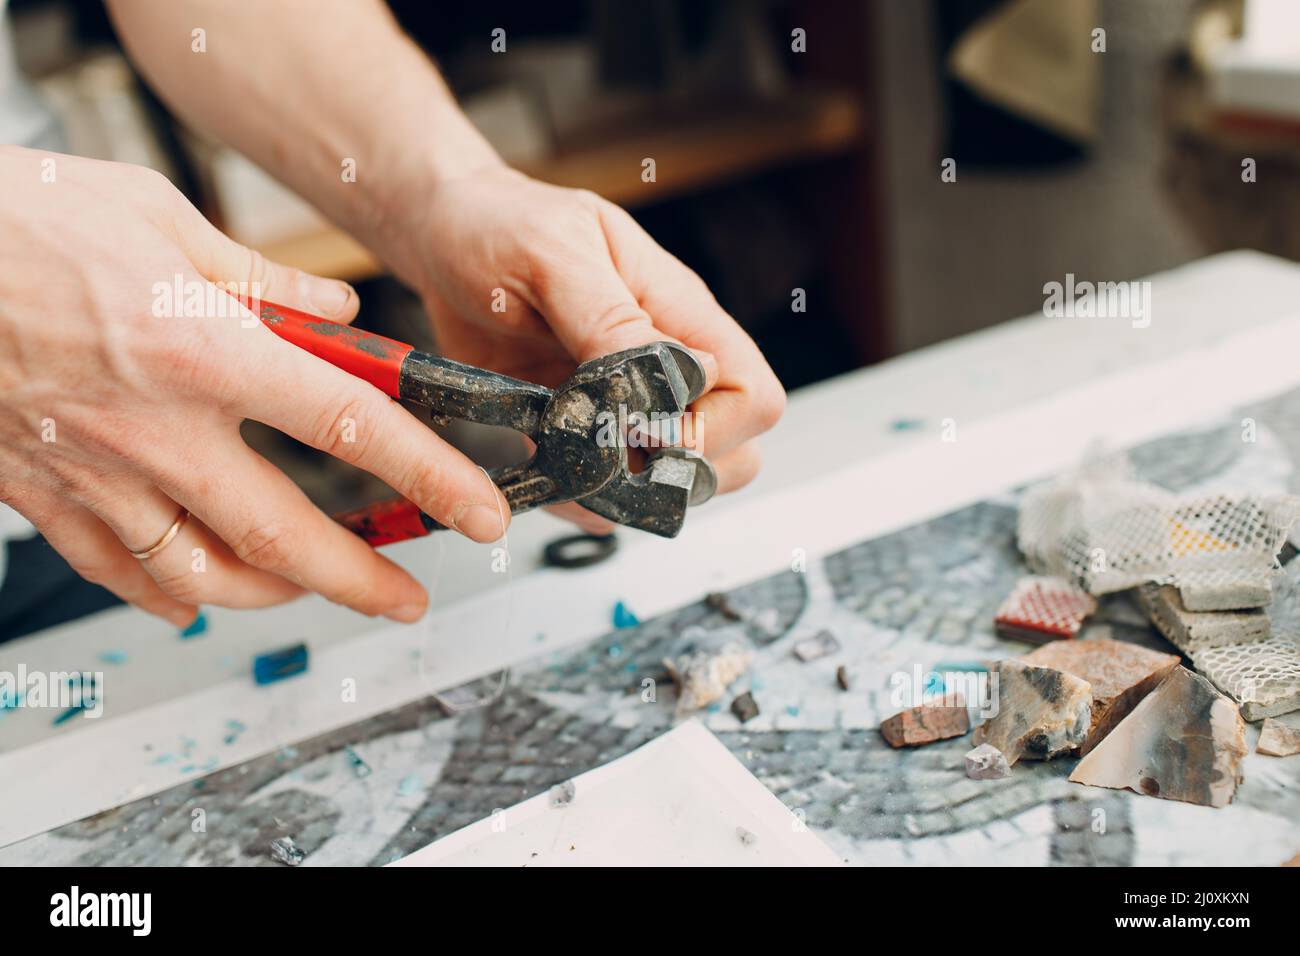 Handwerker Schneiden von Smaltglas mit Zangen Cutter für die Herstellung von Smaltglas Mosaik. Stockfoto